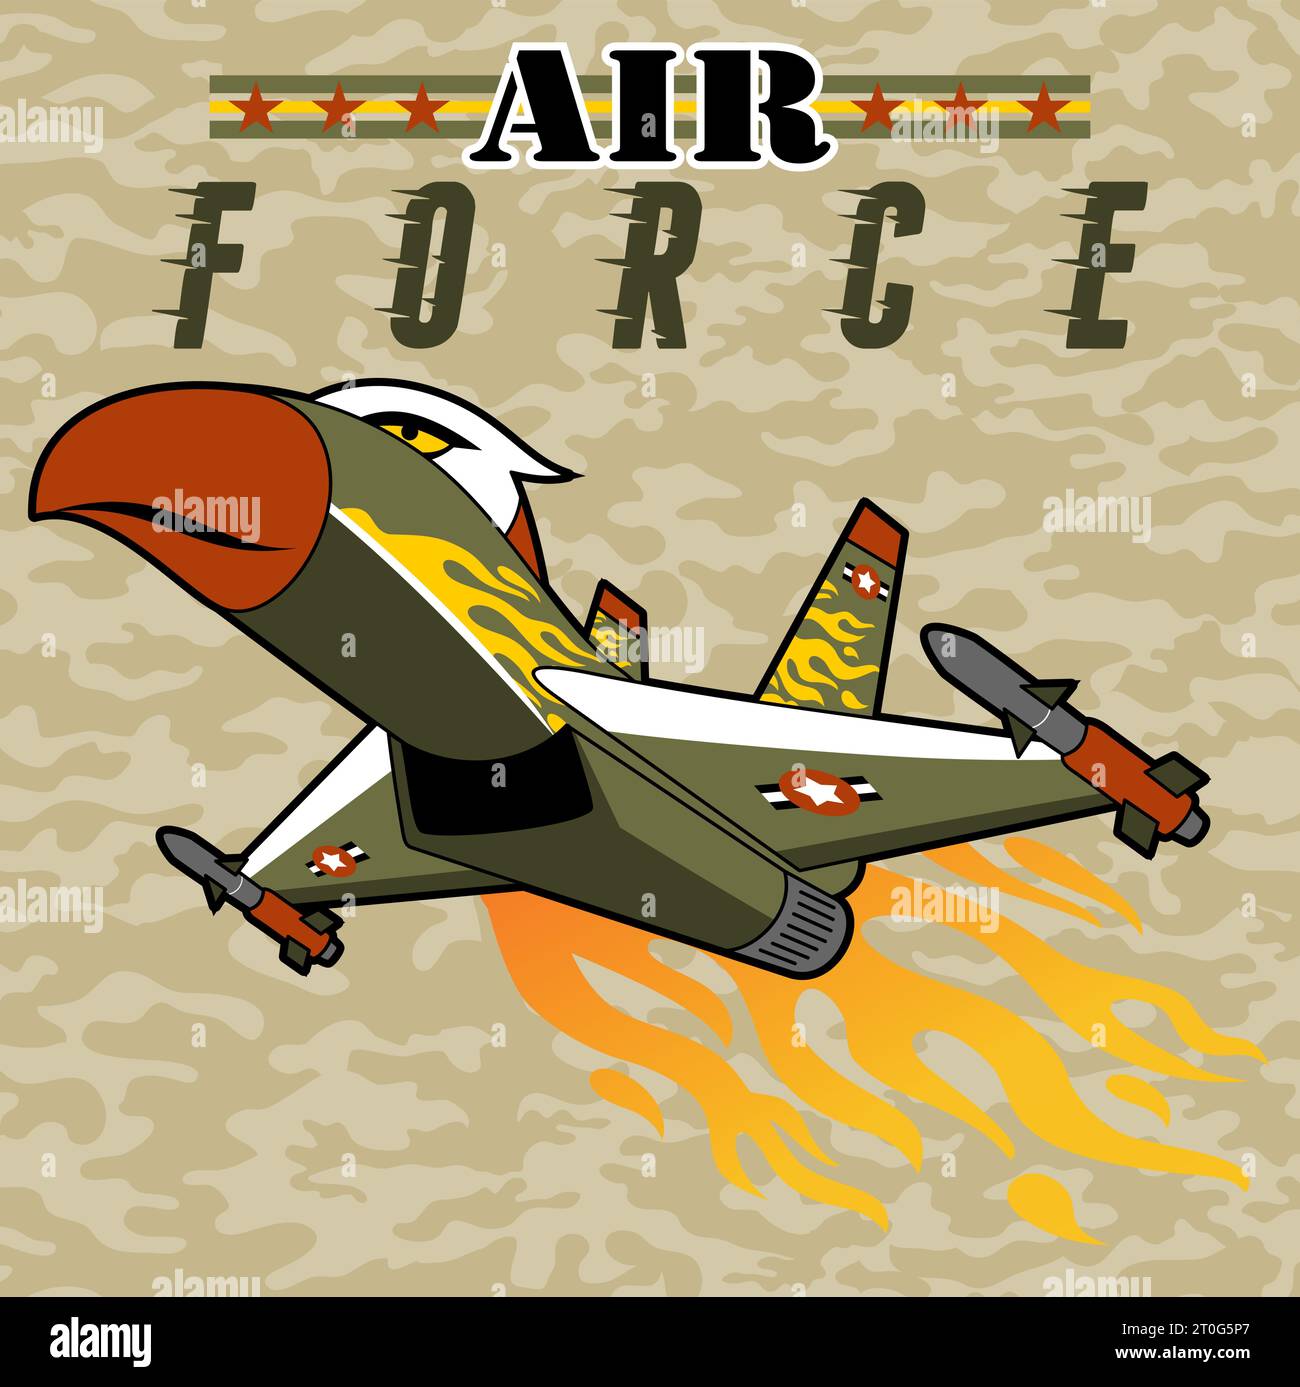 Il jet da combattimento in aquila è caratterizzato da uno sfondo mimetico, illustrazioni di cartoni animati vettoriali Illustrazione Vettoriale